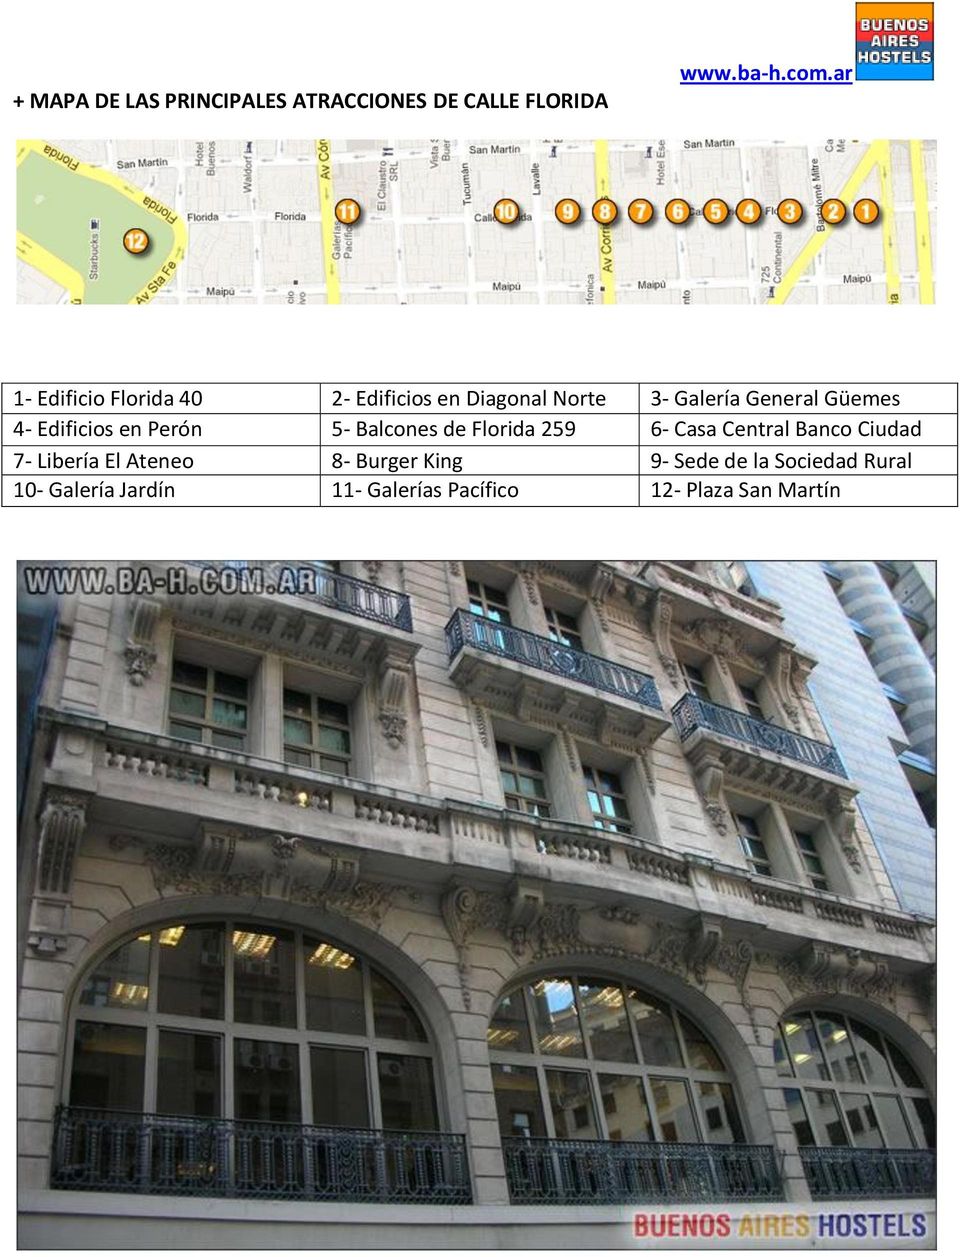 Edificios en Perón 5- Balcones de Florida 259 6- Casa Central Banco Ciudad 7- Libería El